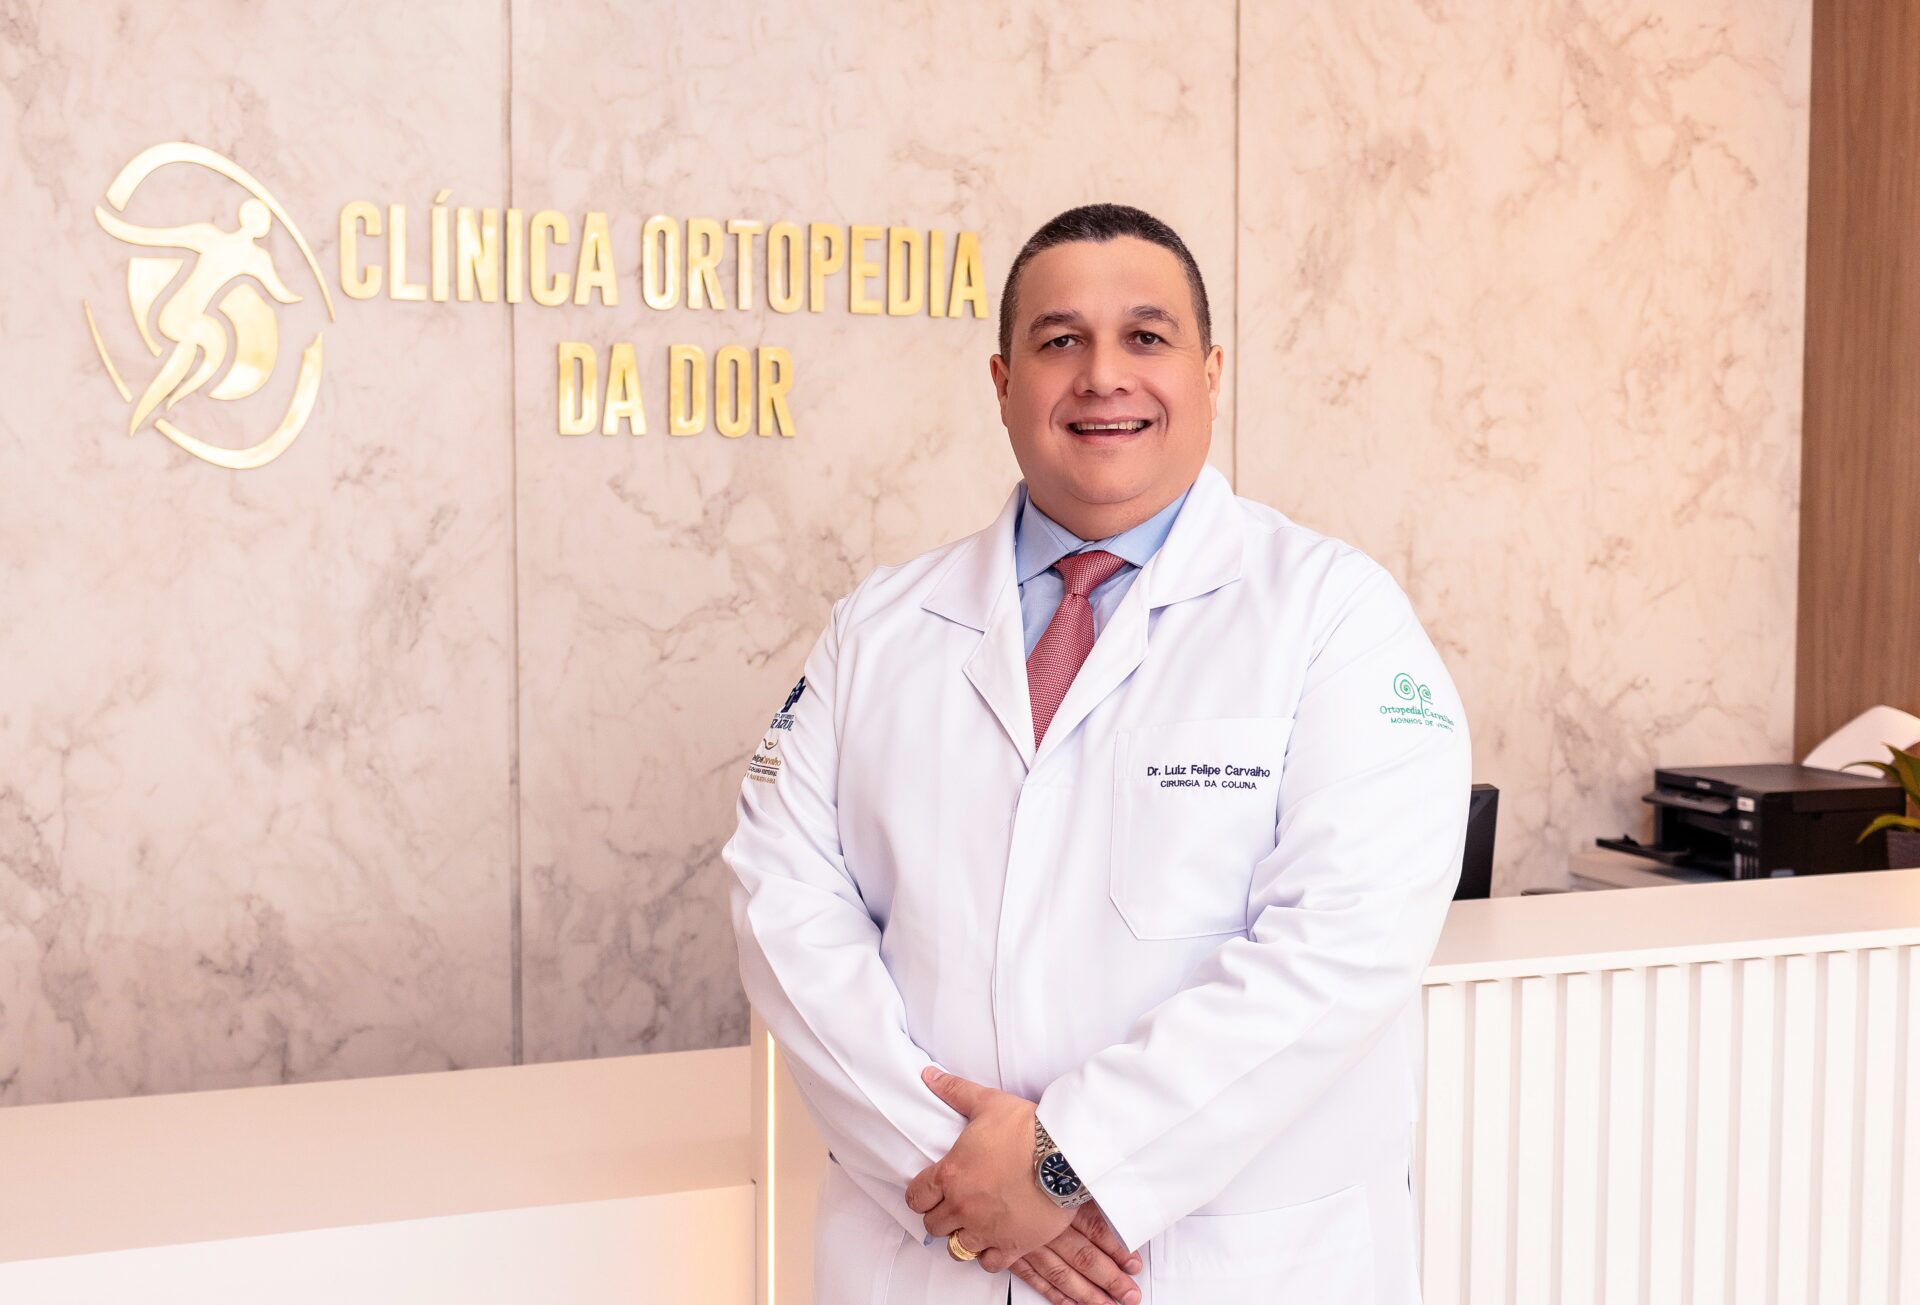 Ortopedista que é referência no Brasil e exterior em tratamentos com células-tronco abre clínica em Gravataí